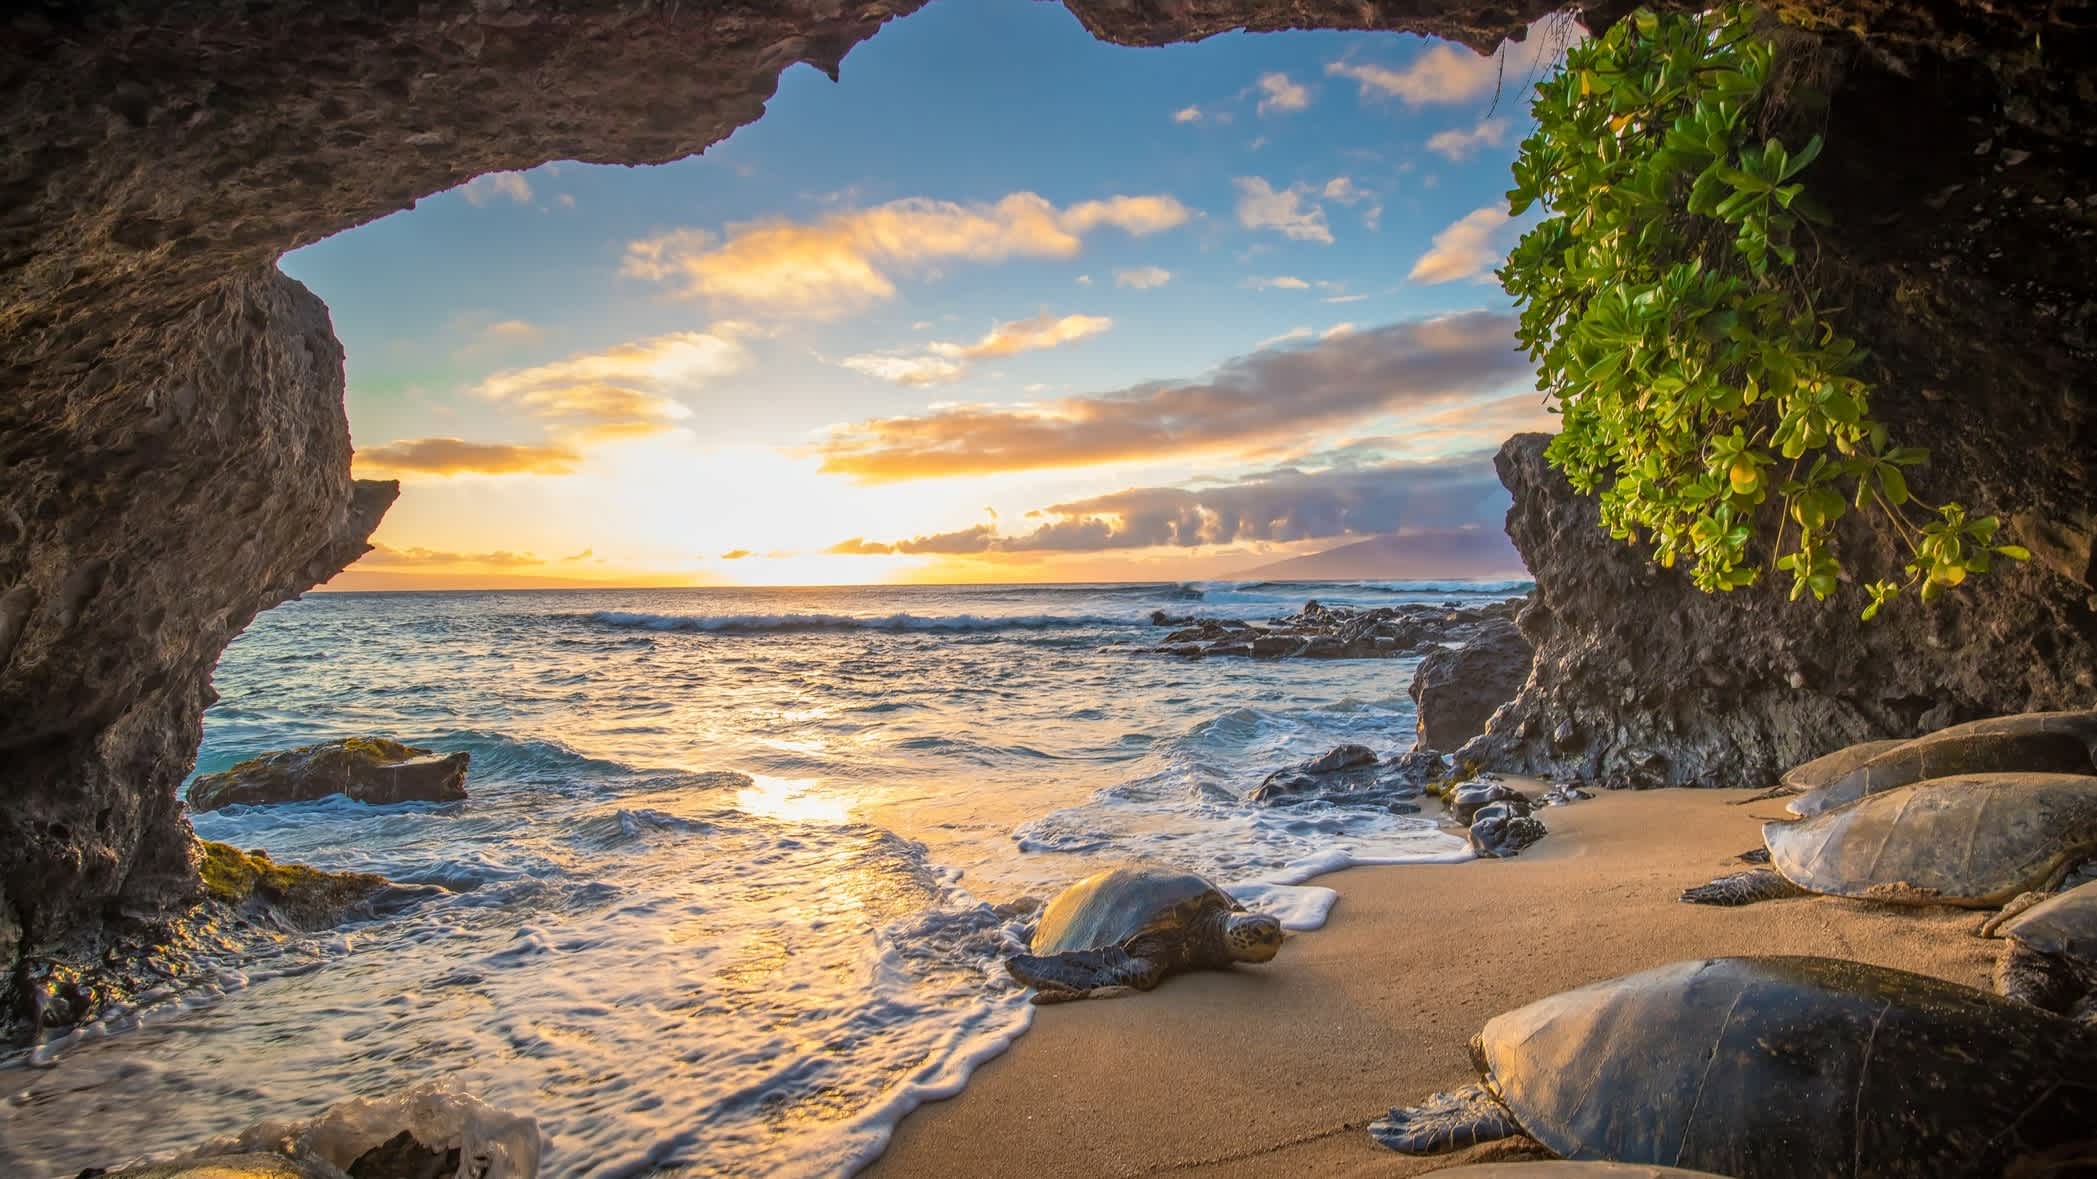 États-Unis, Hawaï, tortue dans une grotte à Maui

